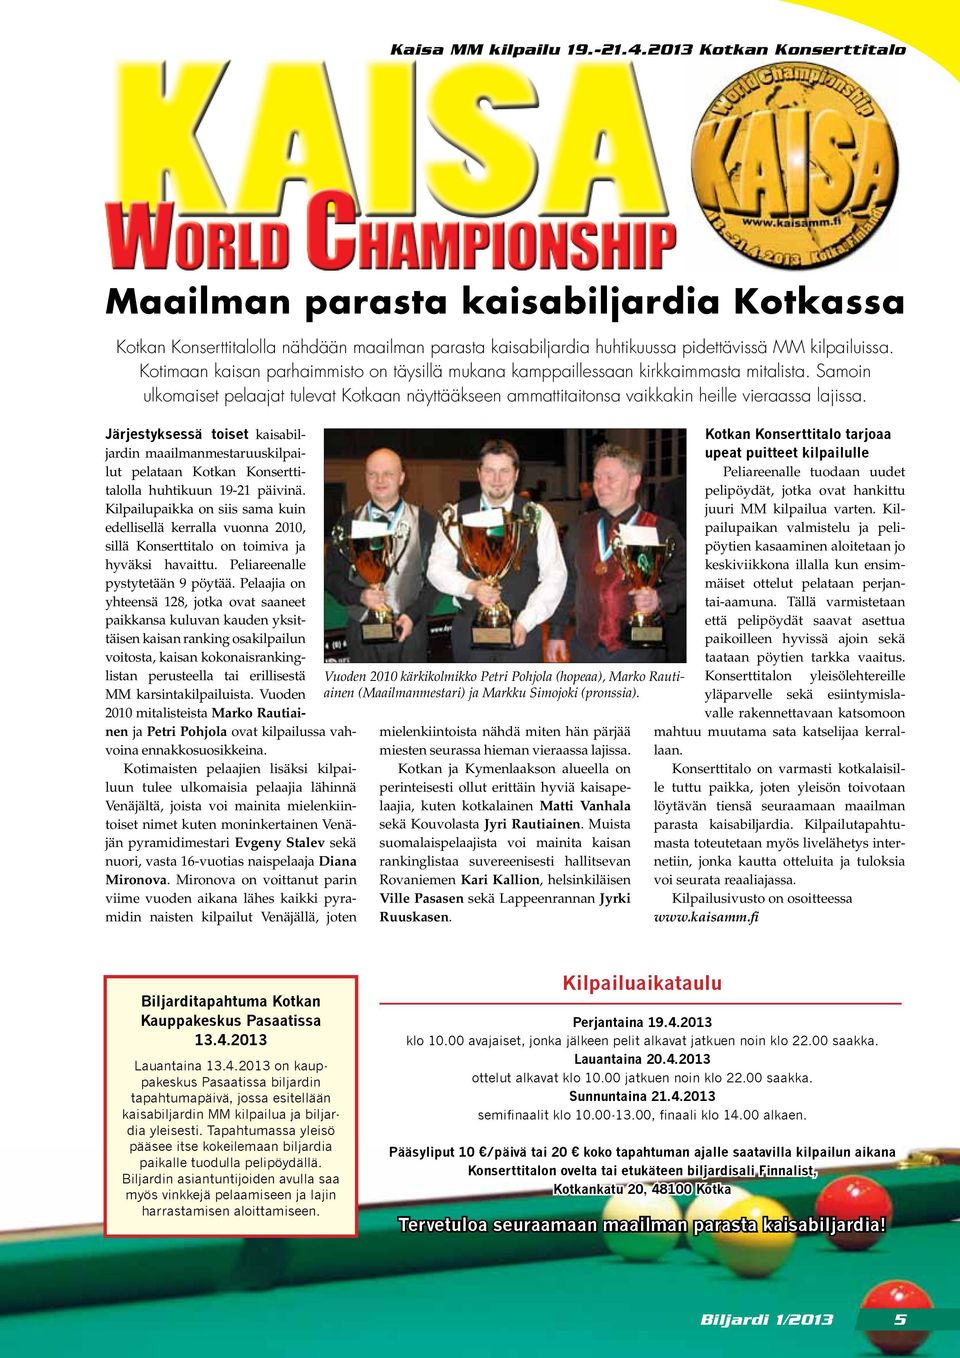 Järjestyksessä toiset kaisabiljardin maailmanmestaruuskilpailut pelataan Kotkan Konserttitalolla huhtikuun 19-21 päivinä.